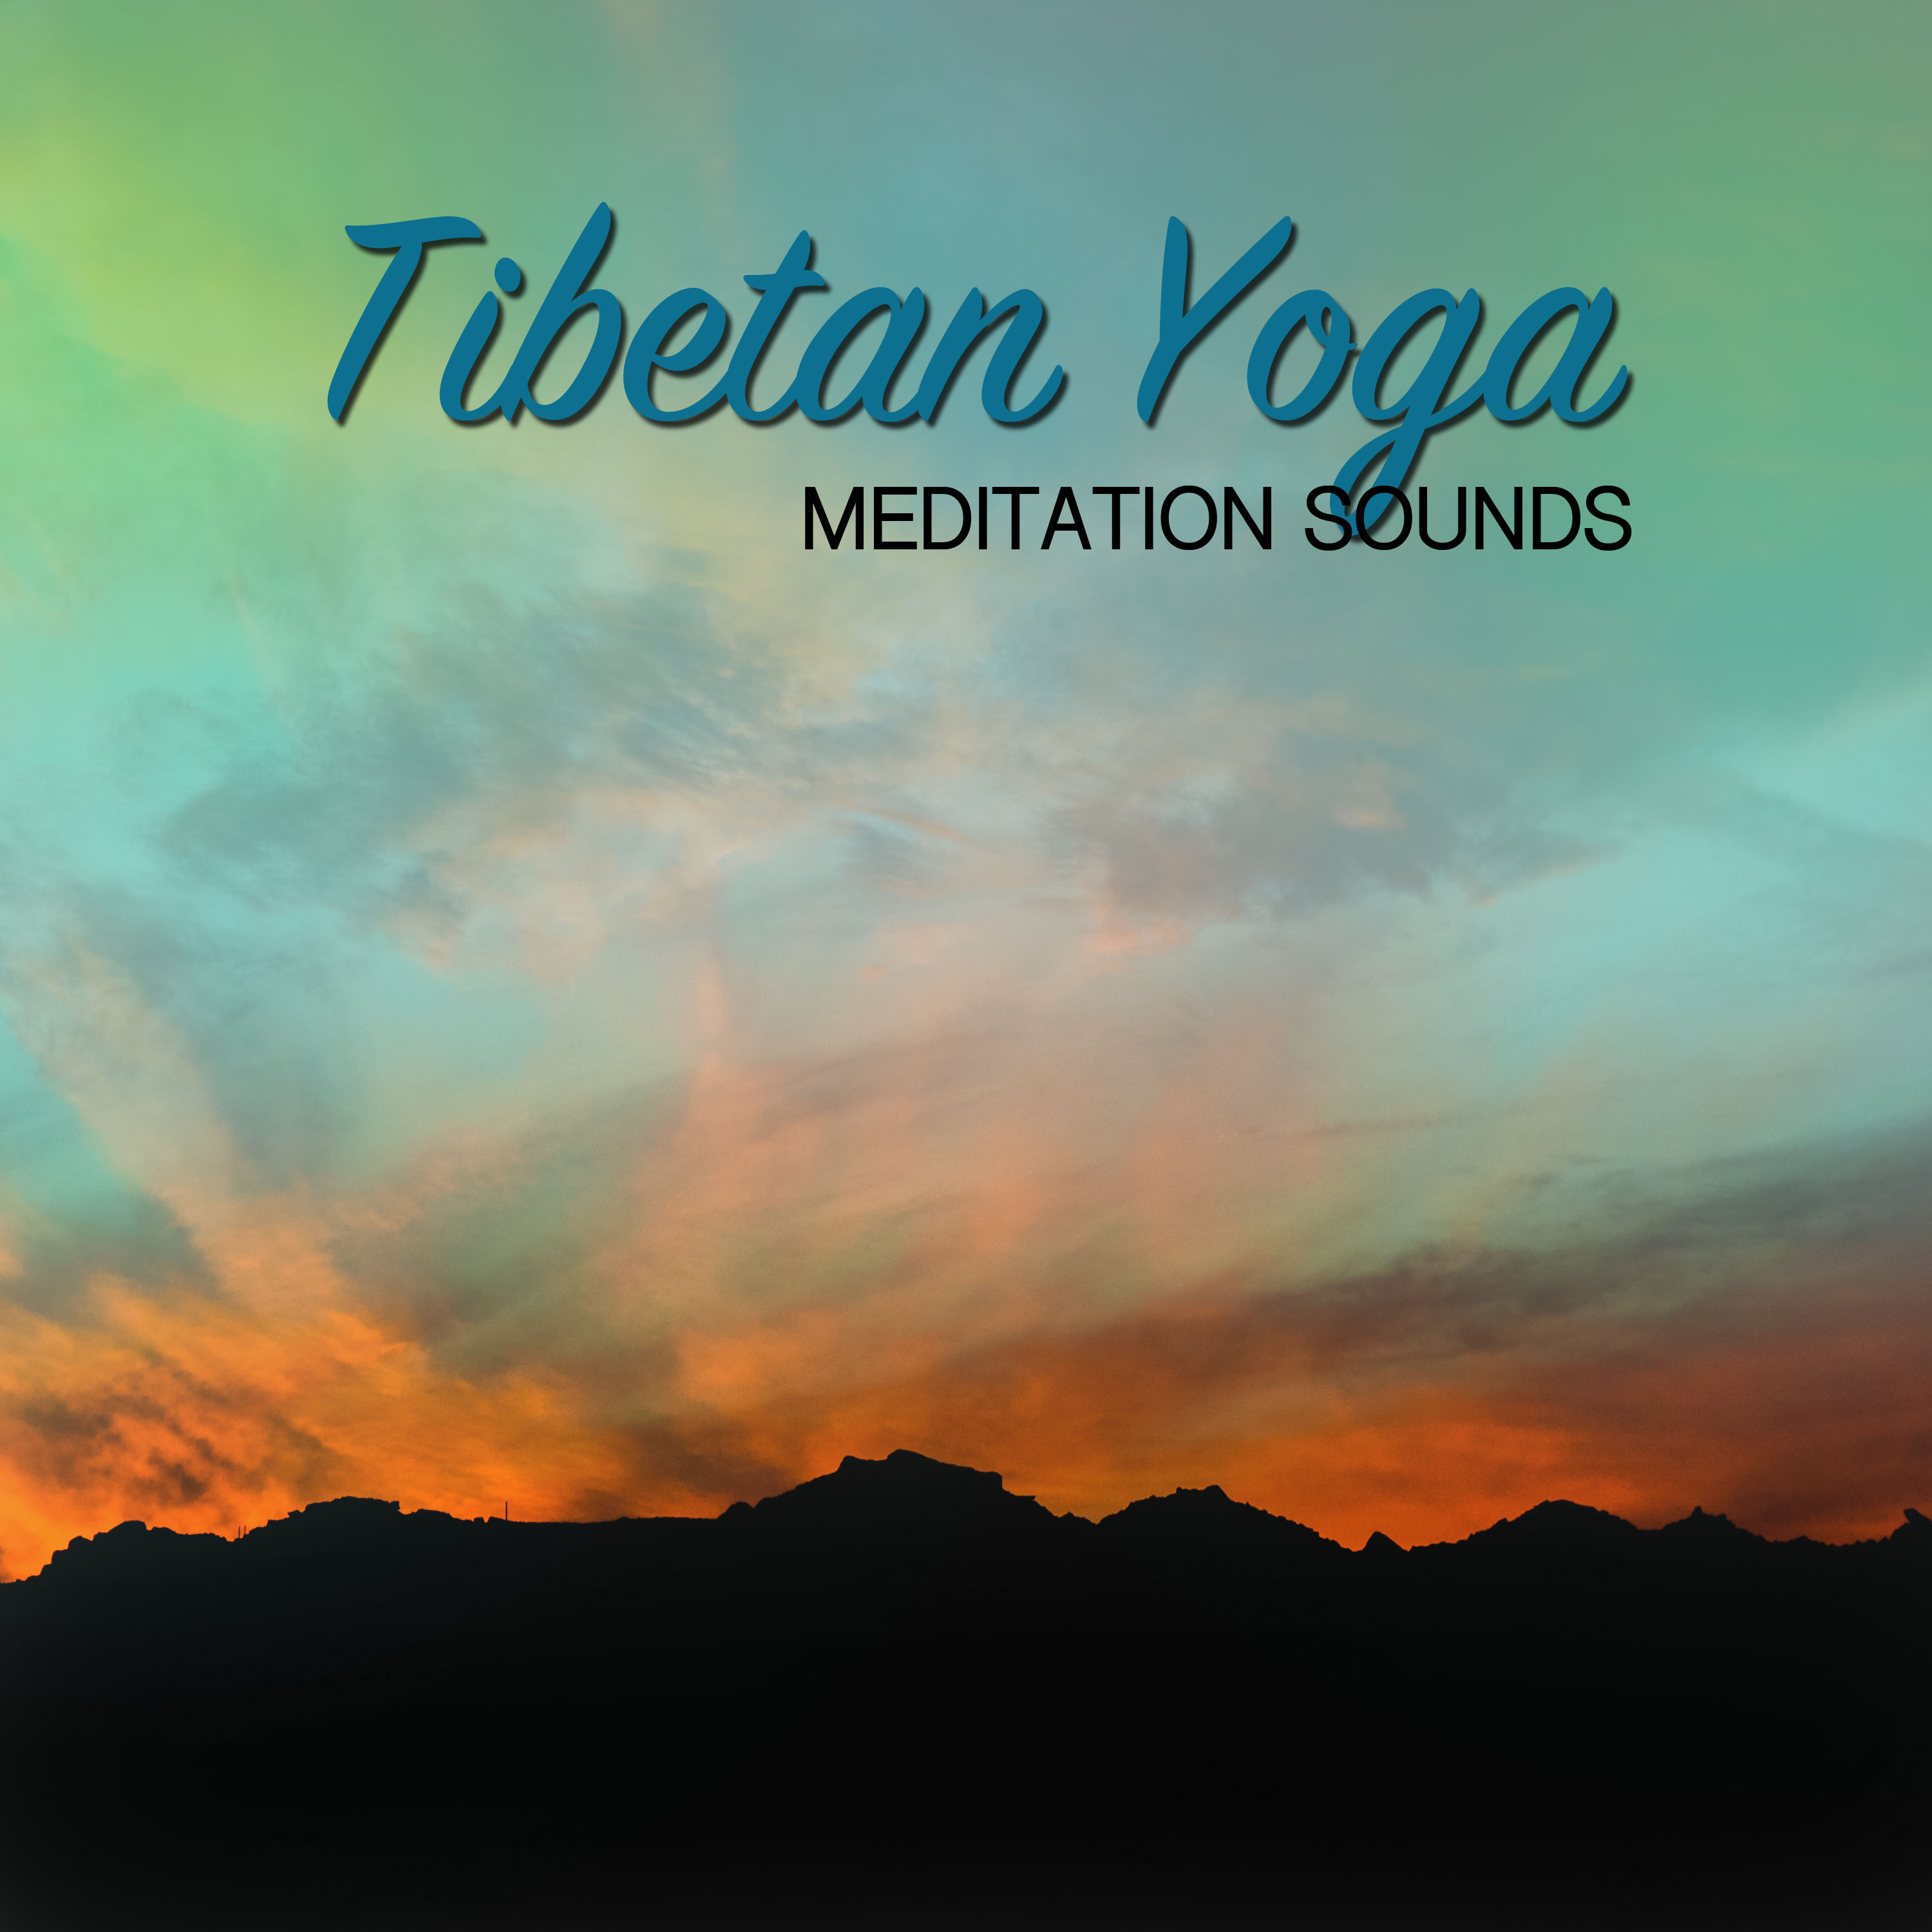 20 Tibetan Yoga and Meditation Sounds